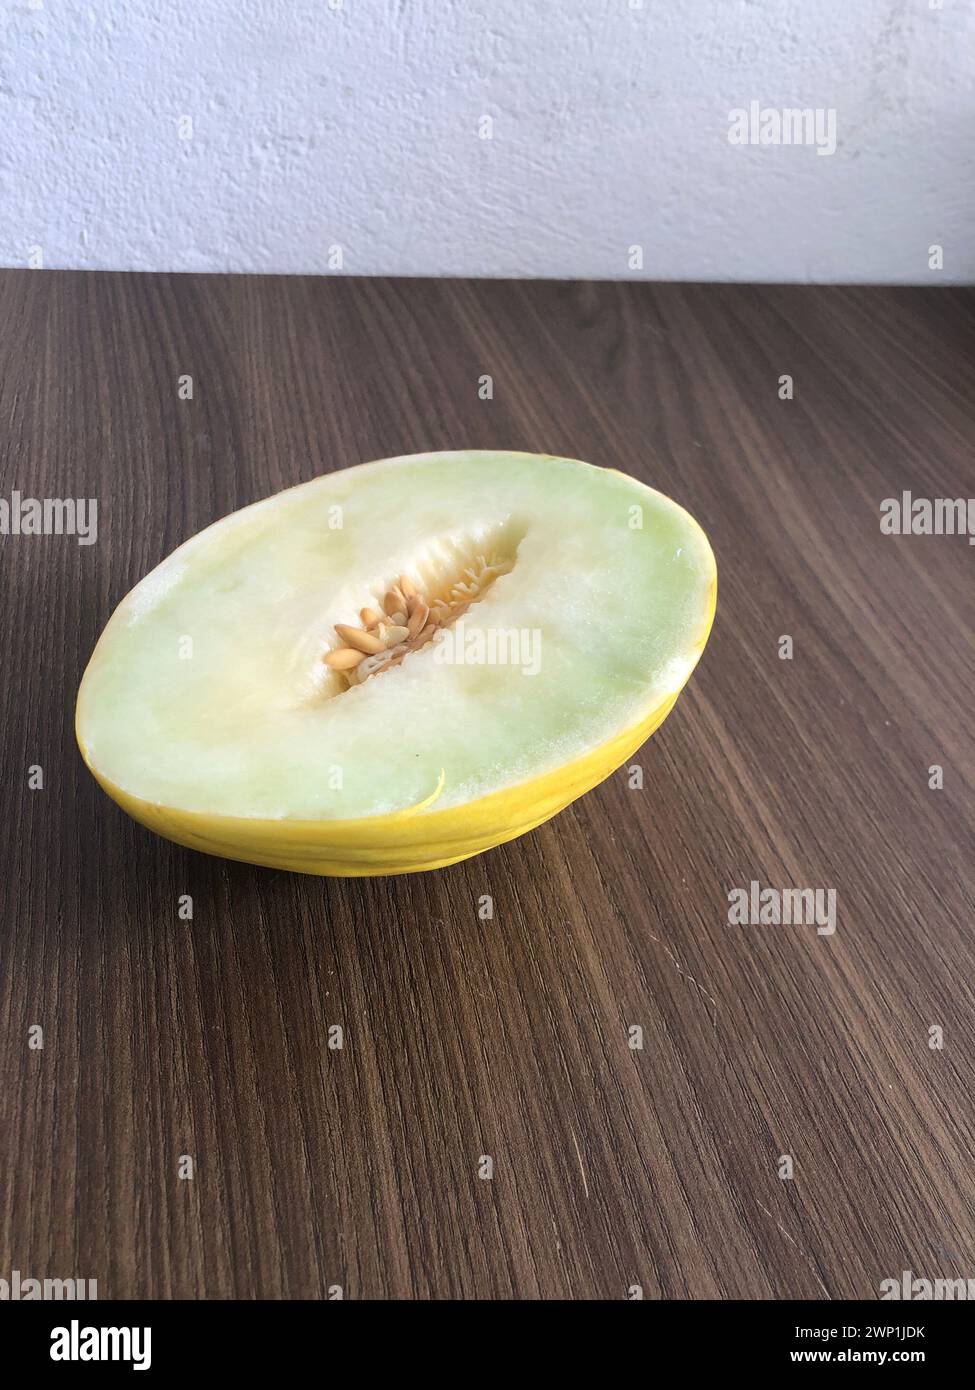 Melone maturo e fresco tagliato su fondo in legno con spazio di copia. Cantaloupe o cantaloupe (Cucumis melo) su fondo di tavola in legno. Frutta preferita Foto Stock